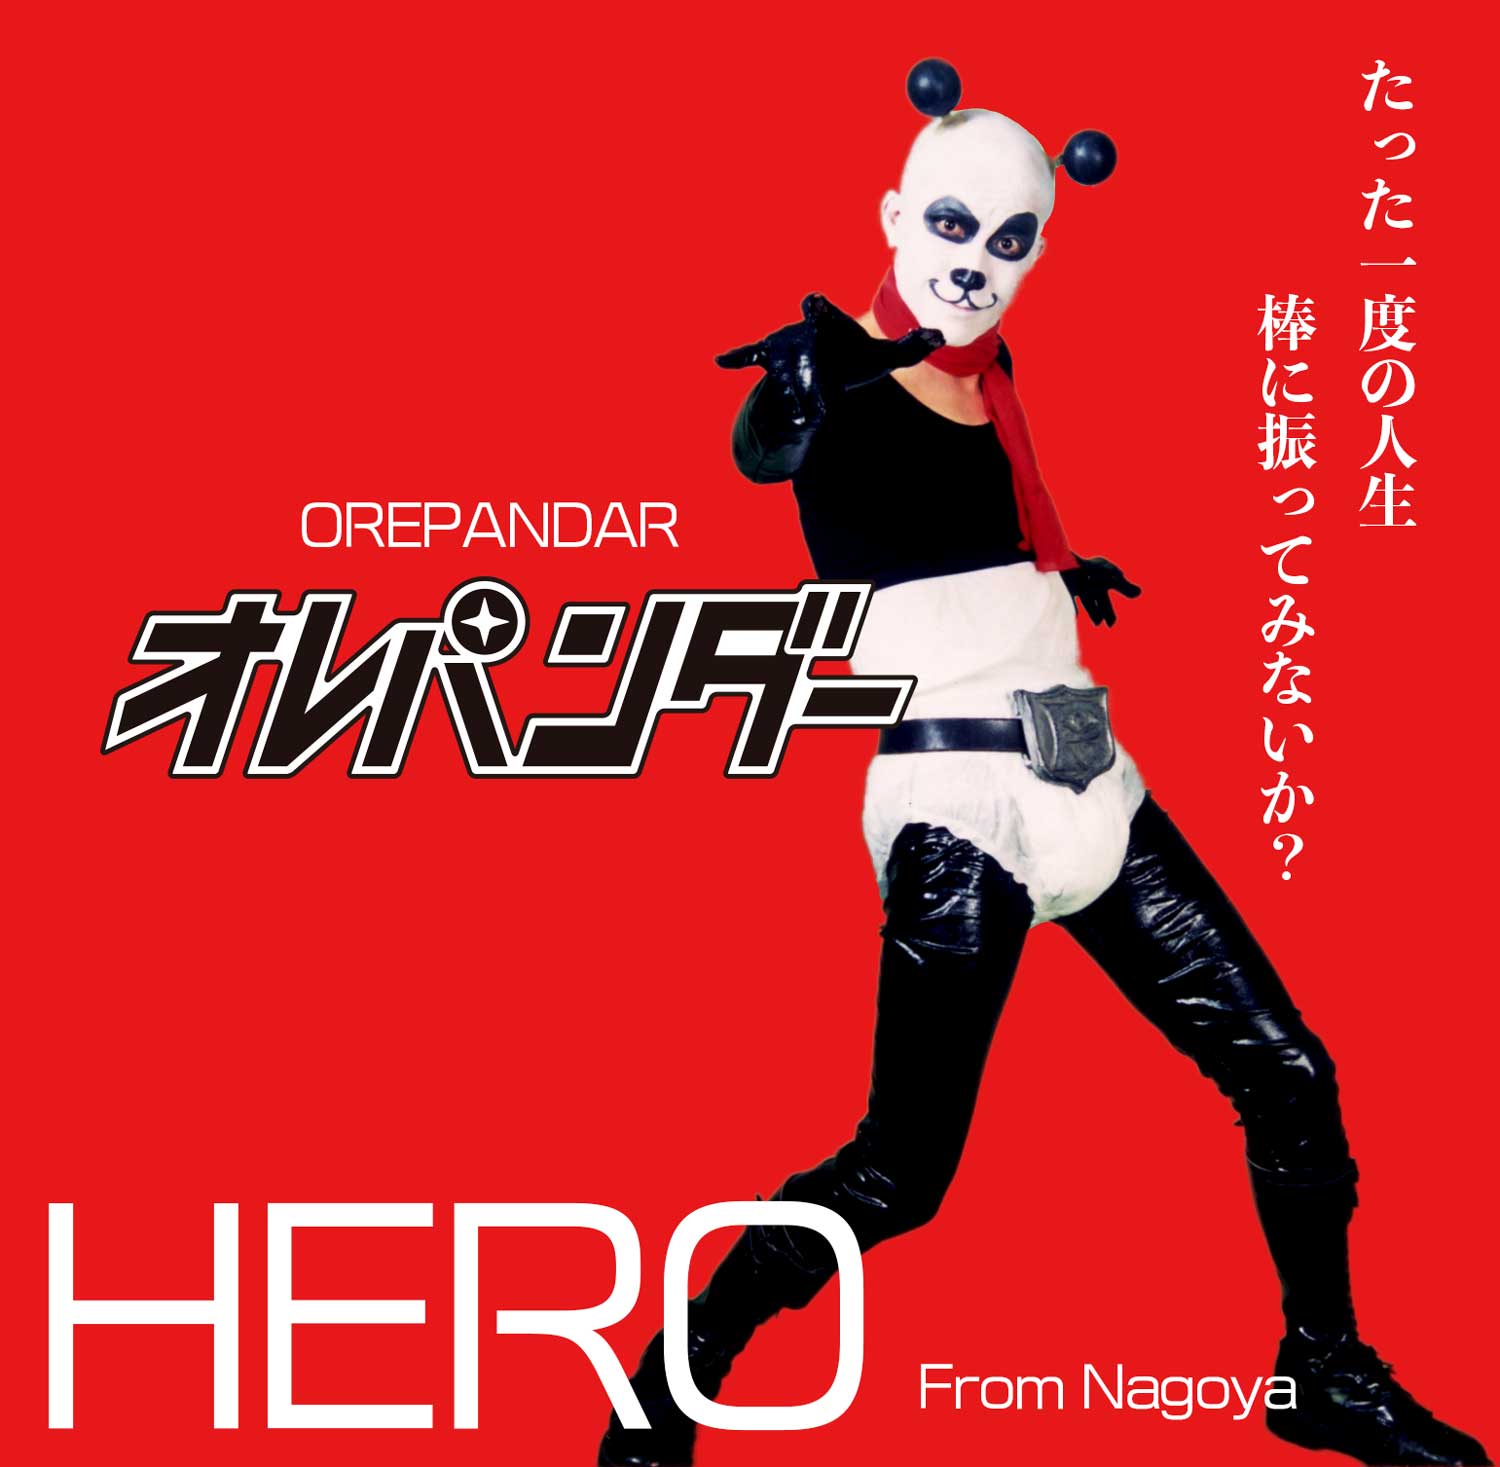 名古屋のヒーローオレパンダー！orepandar.HERO From Nagoya